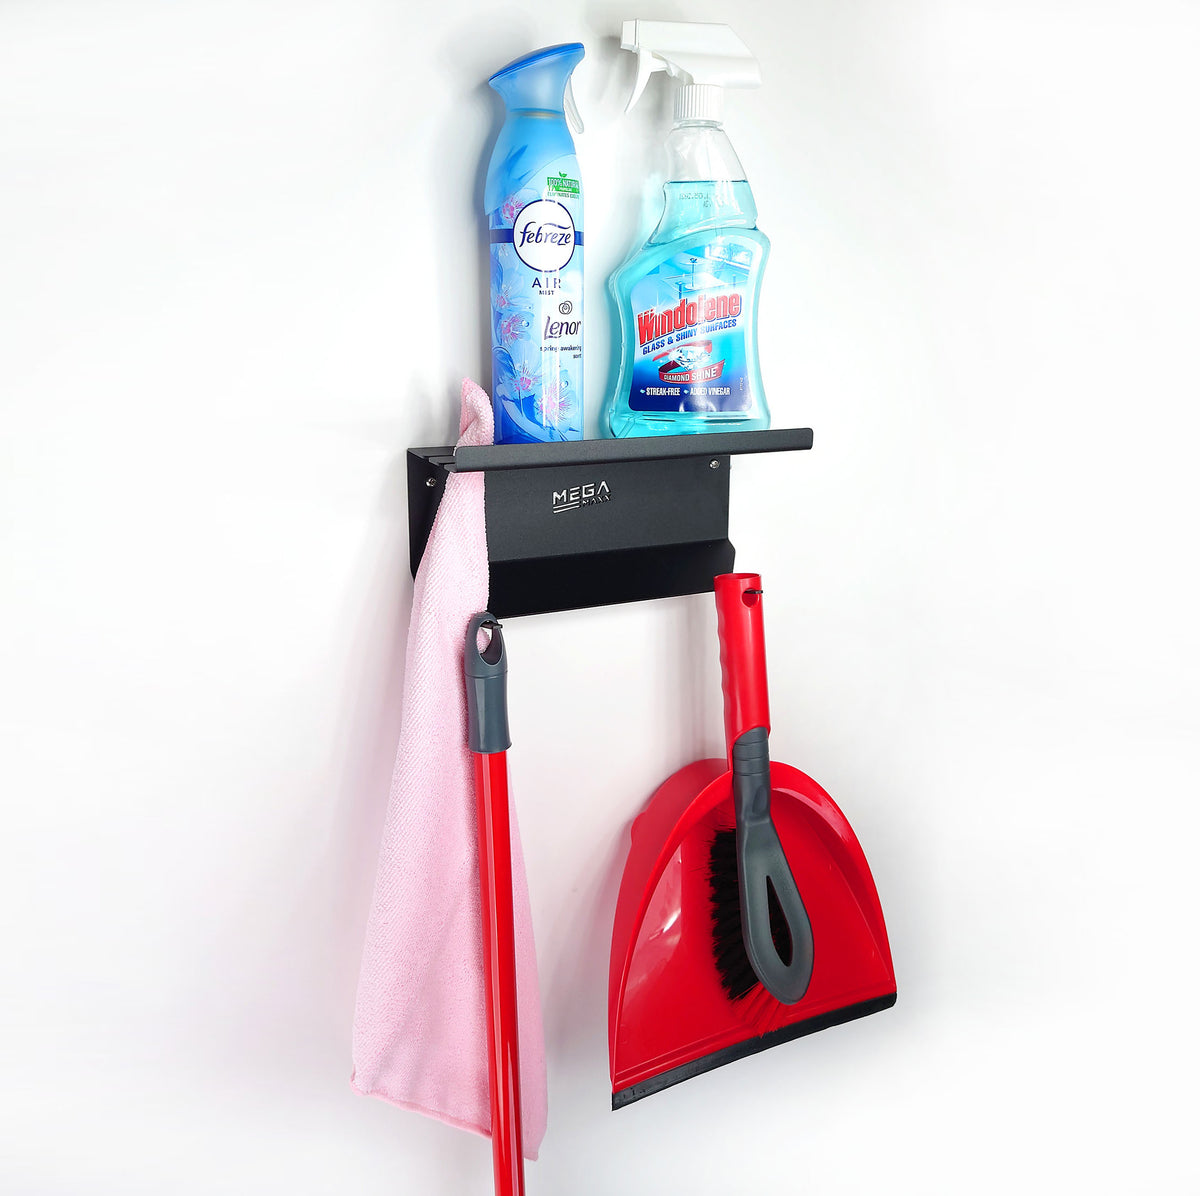 MegaMaxx UK™ Wall Mount Cleaning Supplies Bracket - Mop, Dustpan, Brush & Cloths